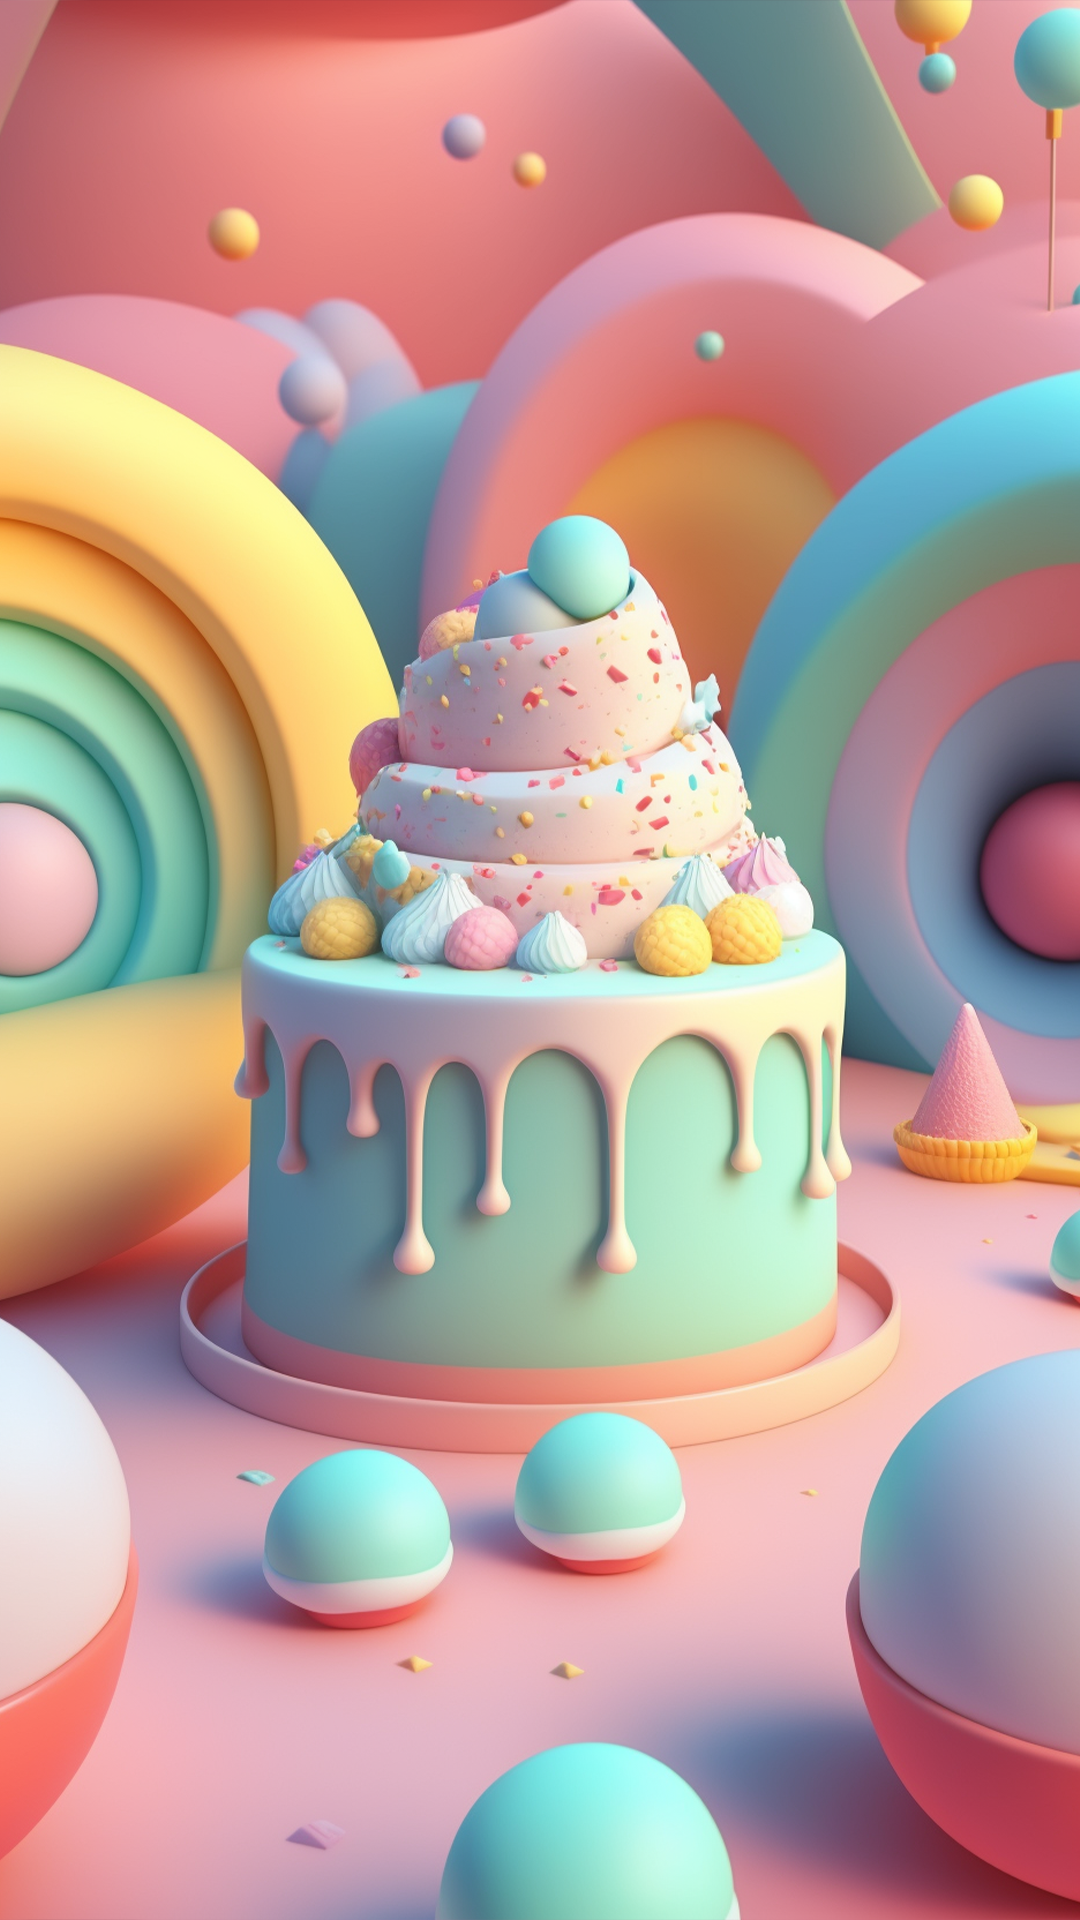 生日蛋糕马卡龙色系可爱背景图片